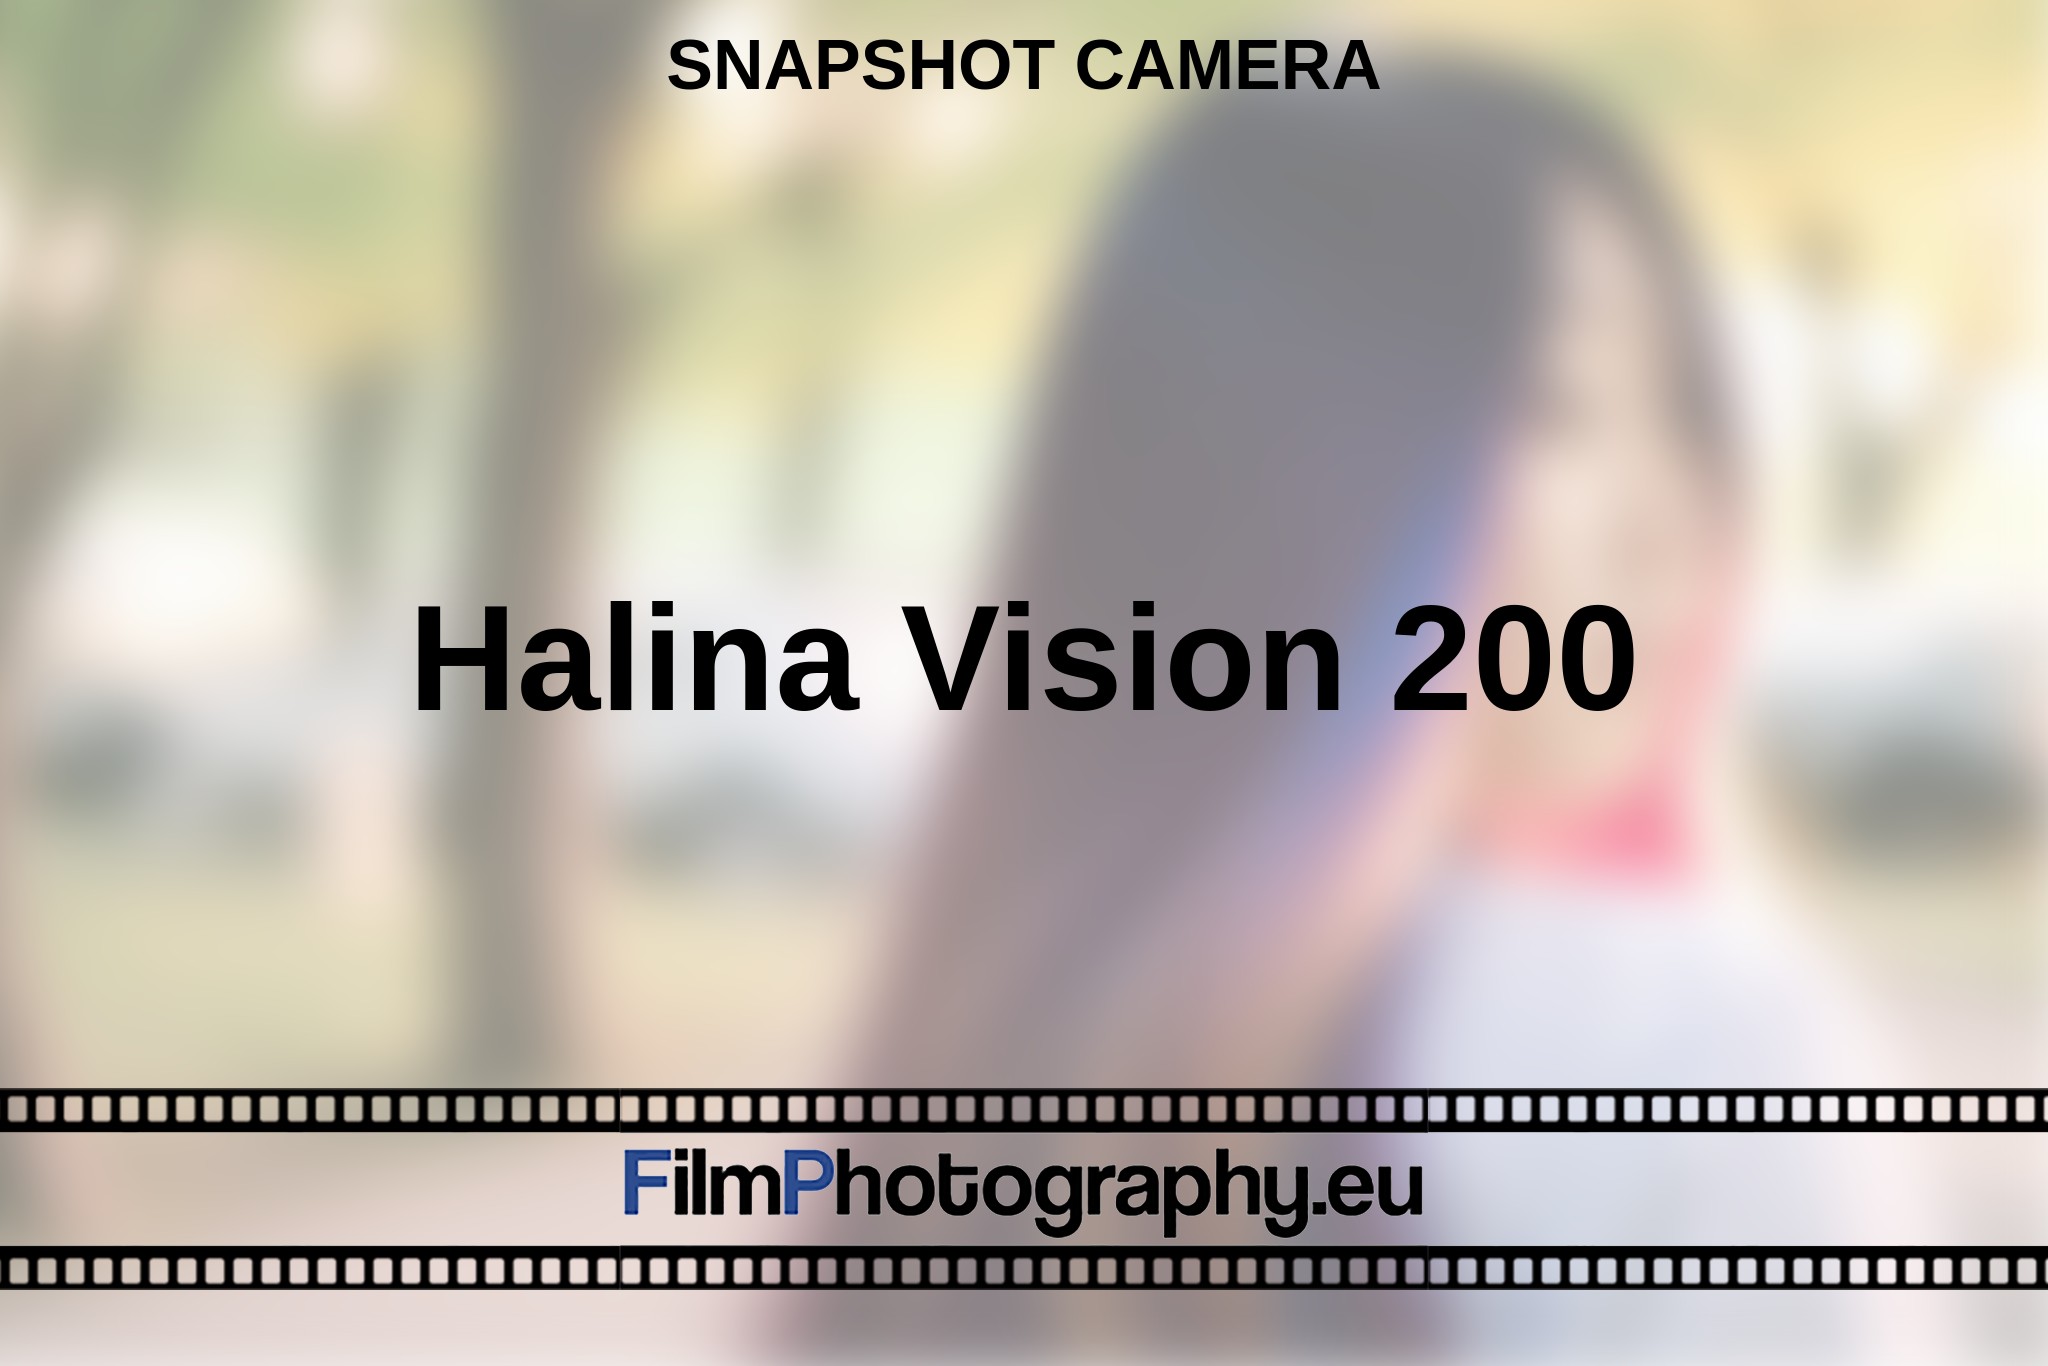 halina-vision-200-snapshot-camera-en-bnv.jpg